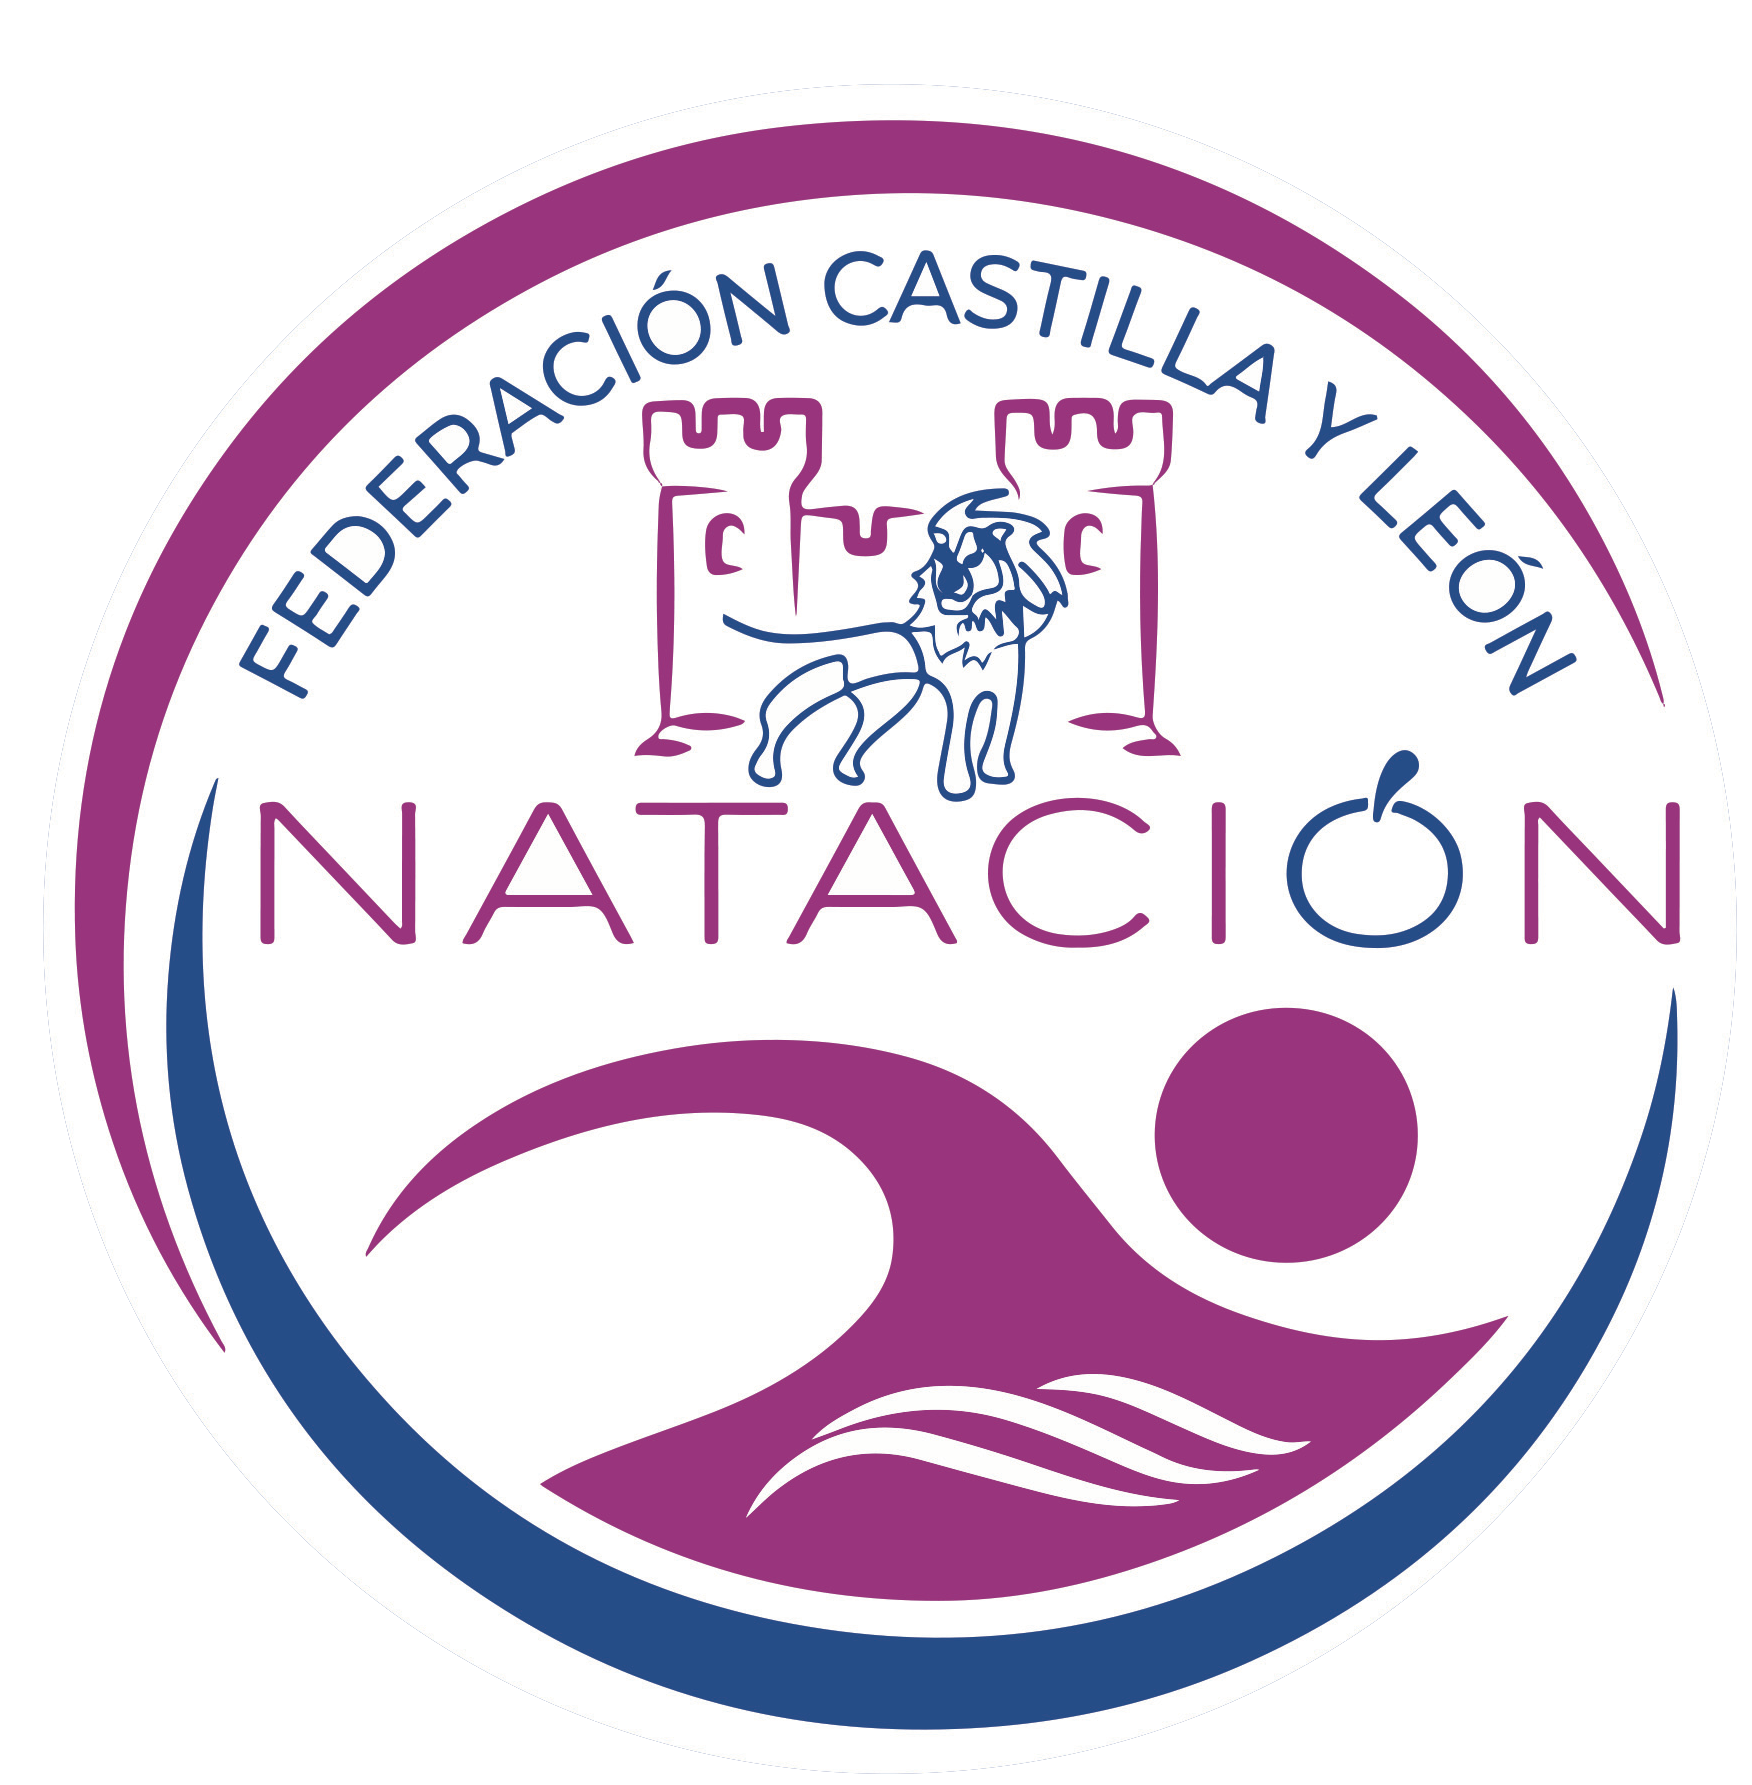 FederaciÃ³n Castilla y LeÃ³n NataciÃ³n